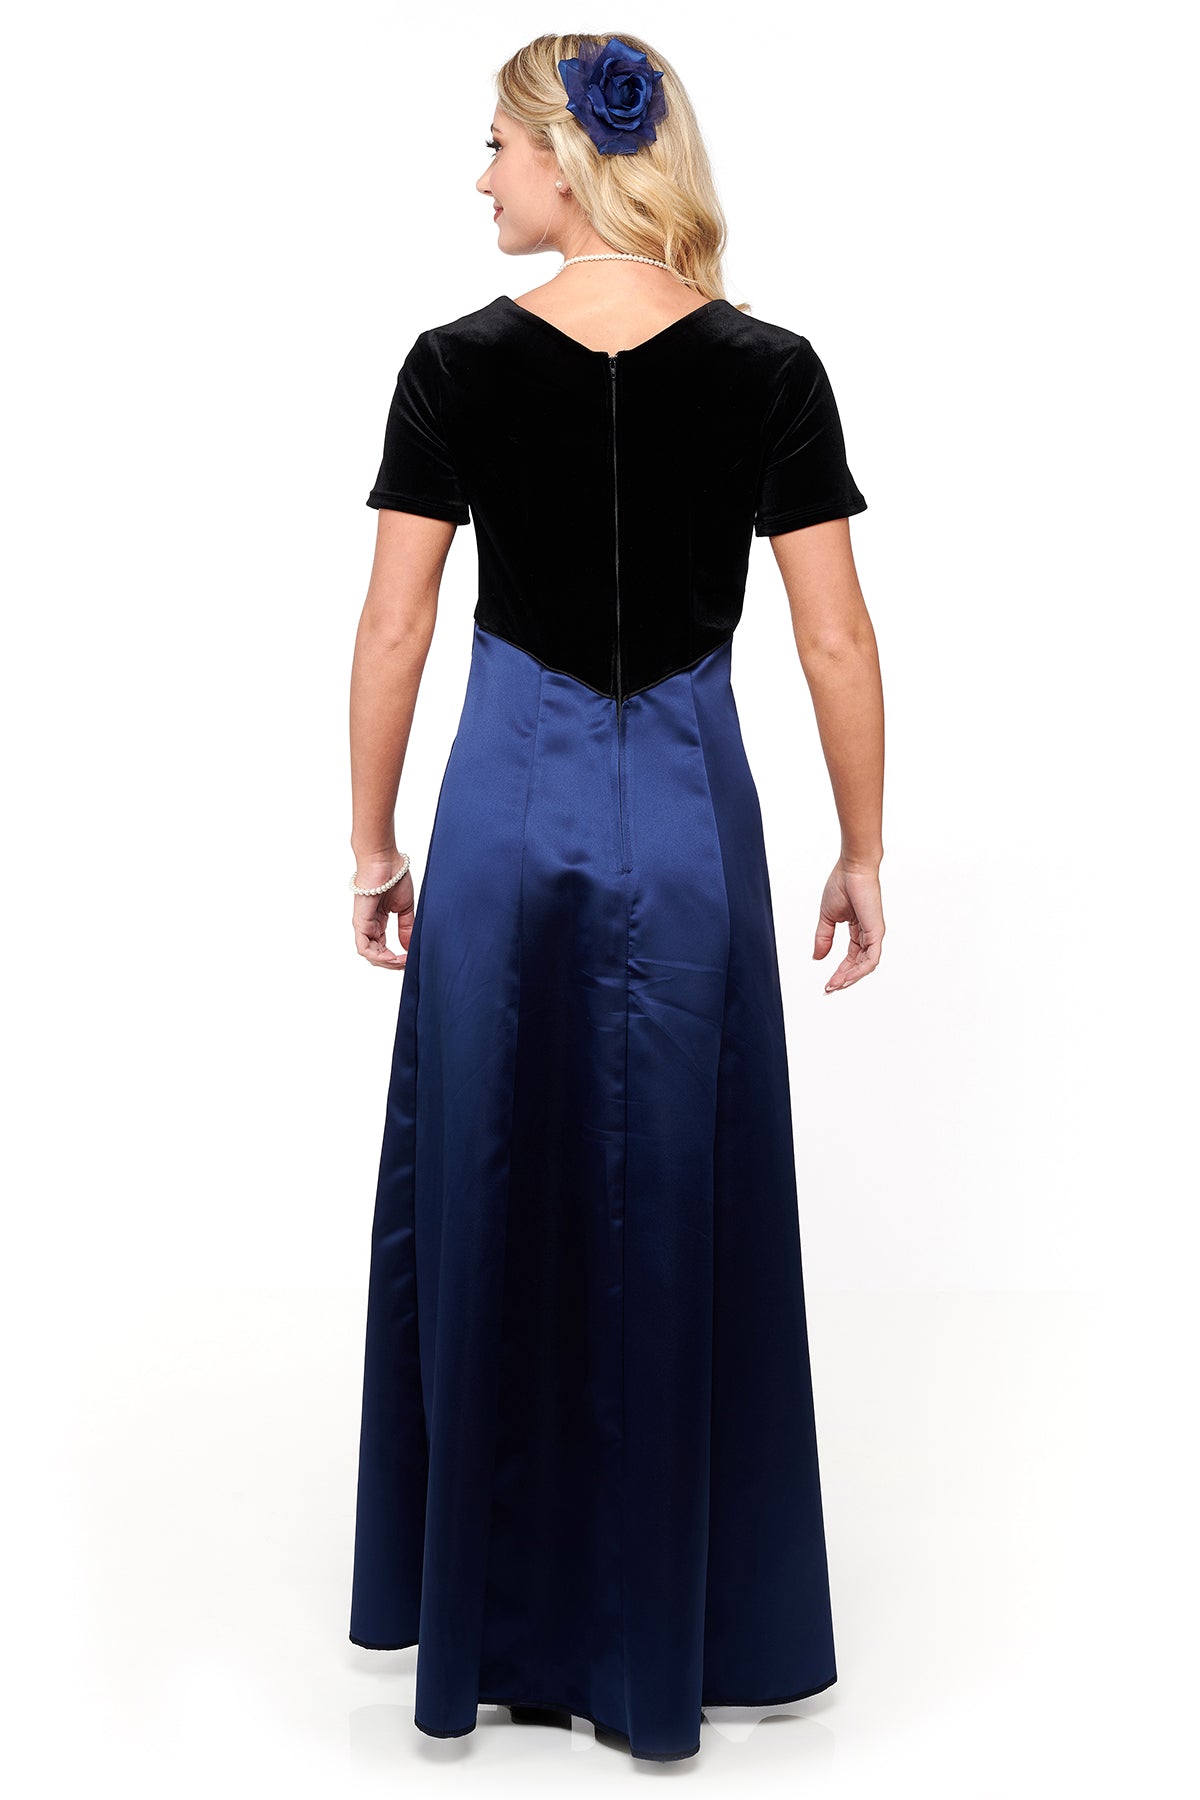 NEW! NEELA (Style #2693) - Velvet Scoop Neck, Short Sleeve Dress with Navy Skirt